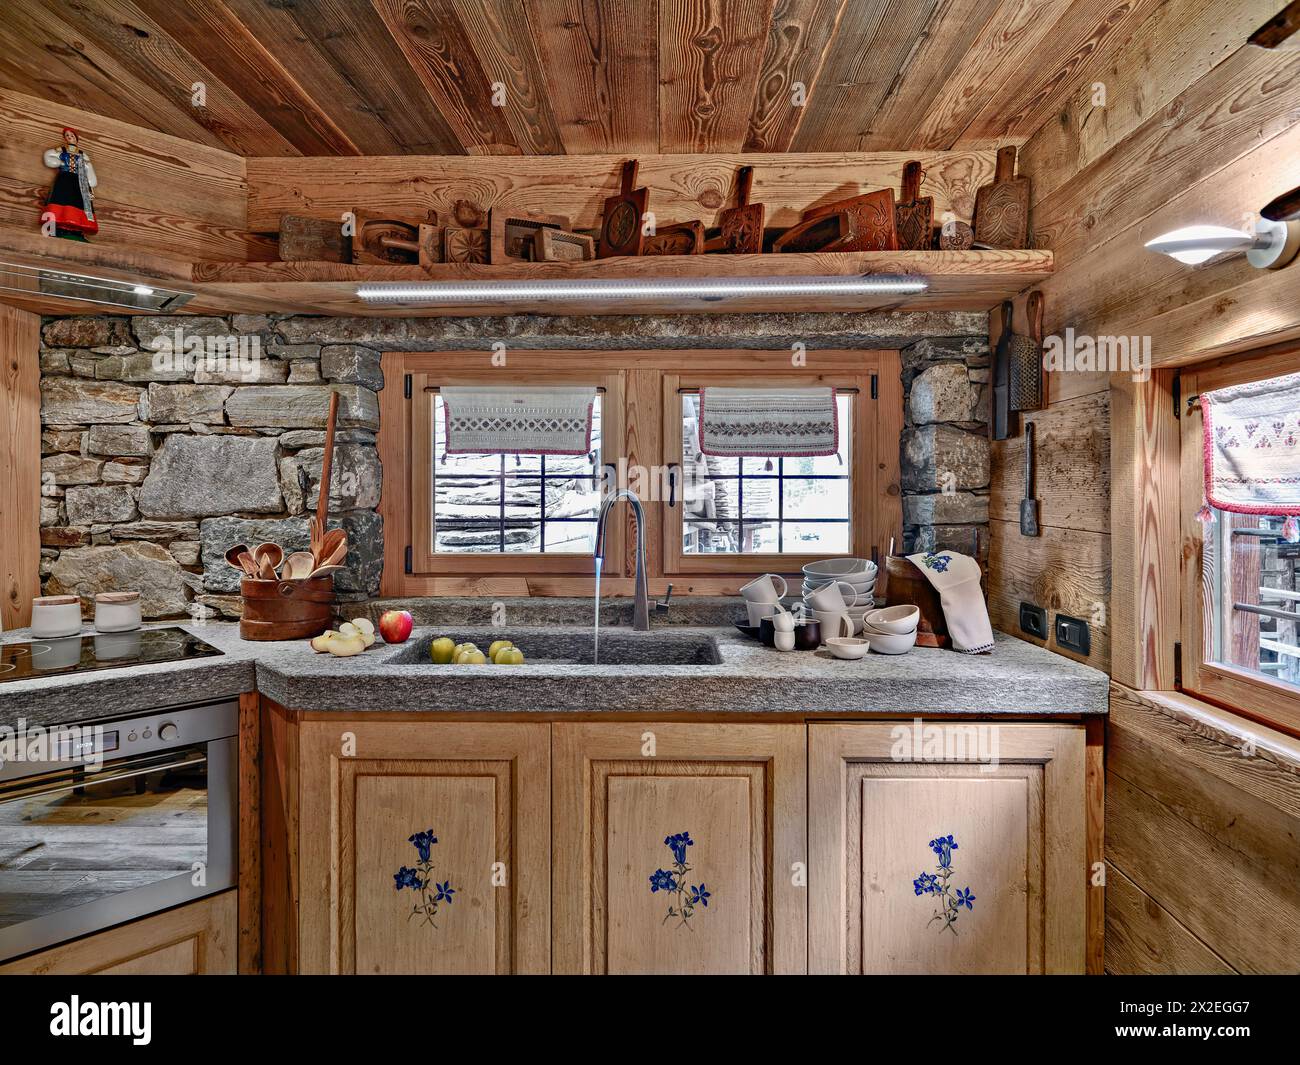 foto interna di una cucina rustica in primo piano il lavello in marmo e il rubinetto invece le pareti sono fatte di pietre Foto Stock